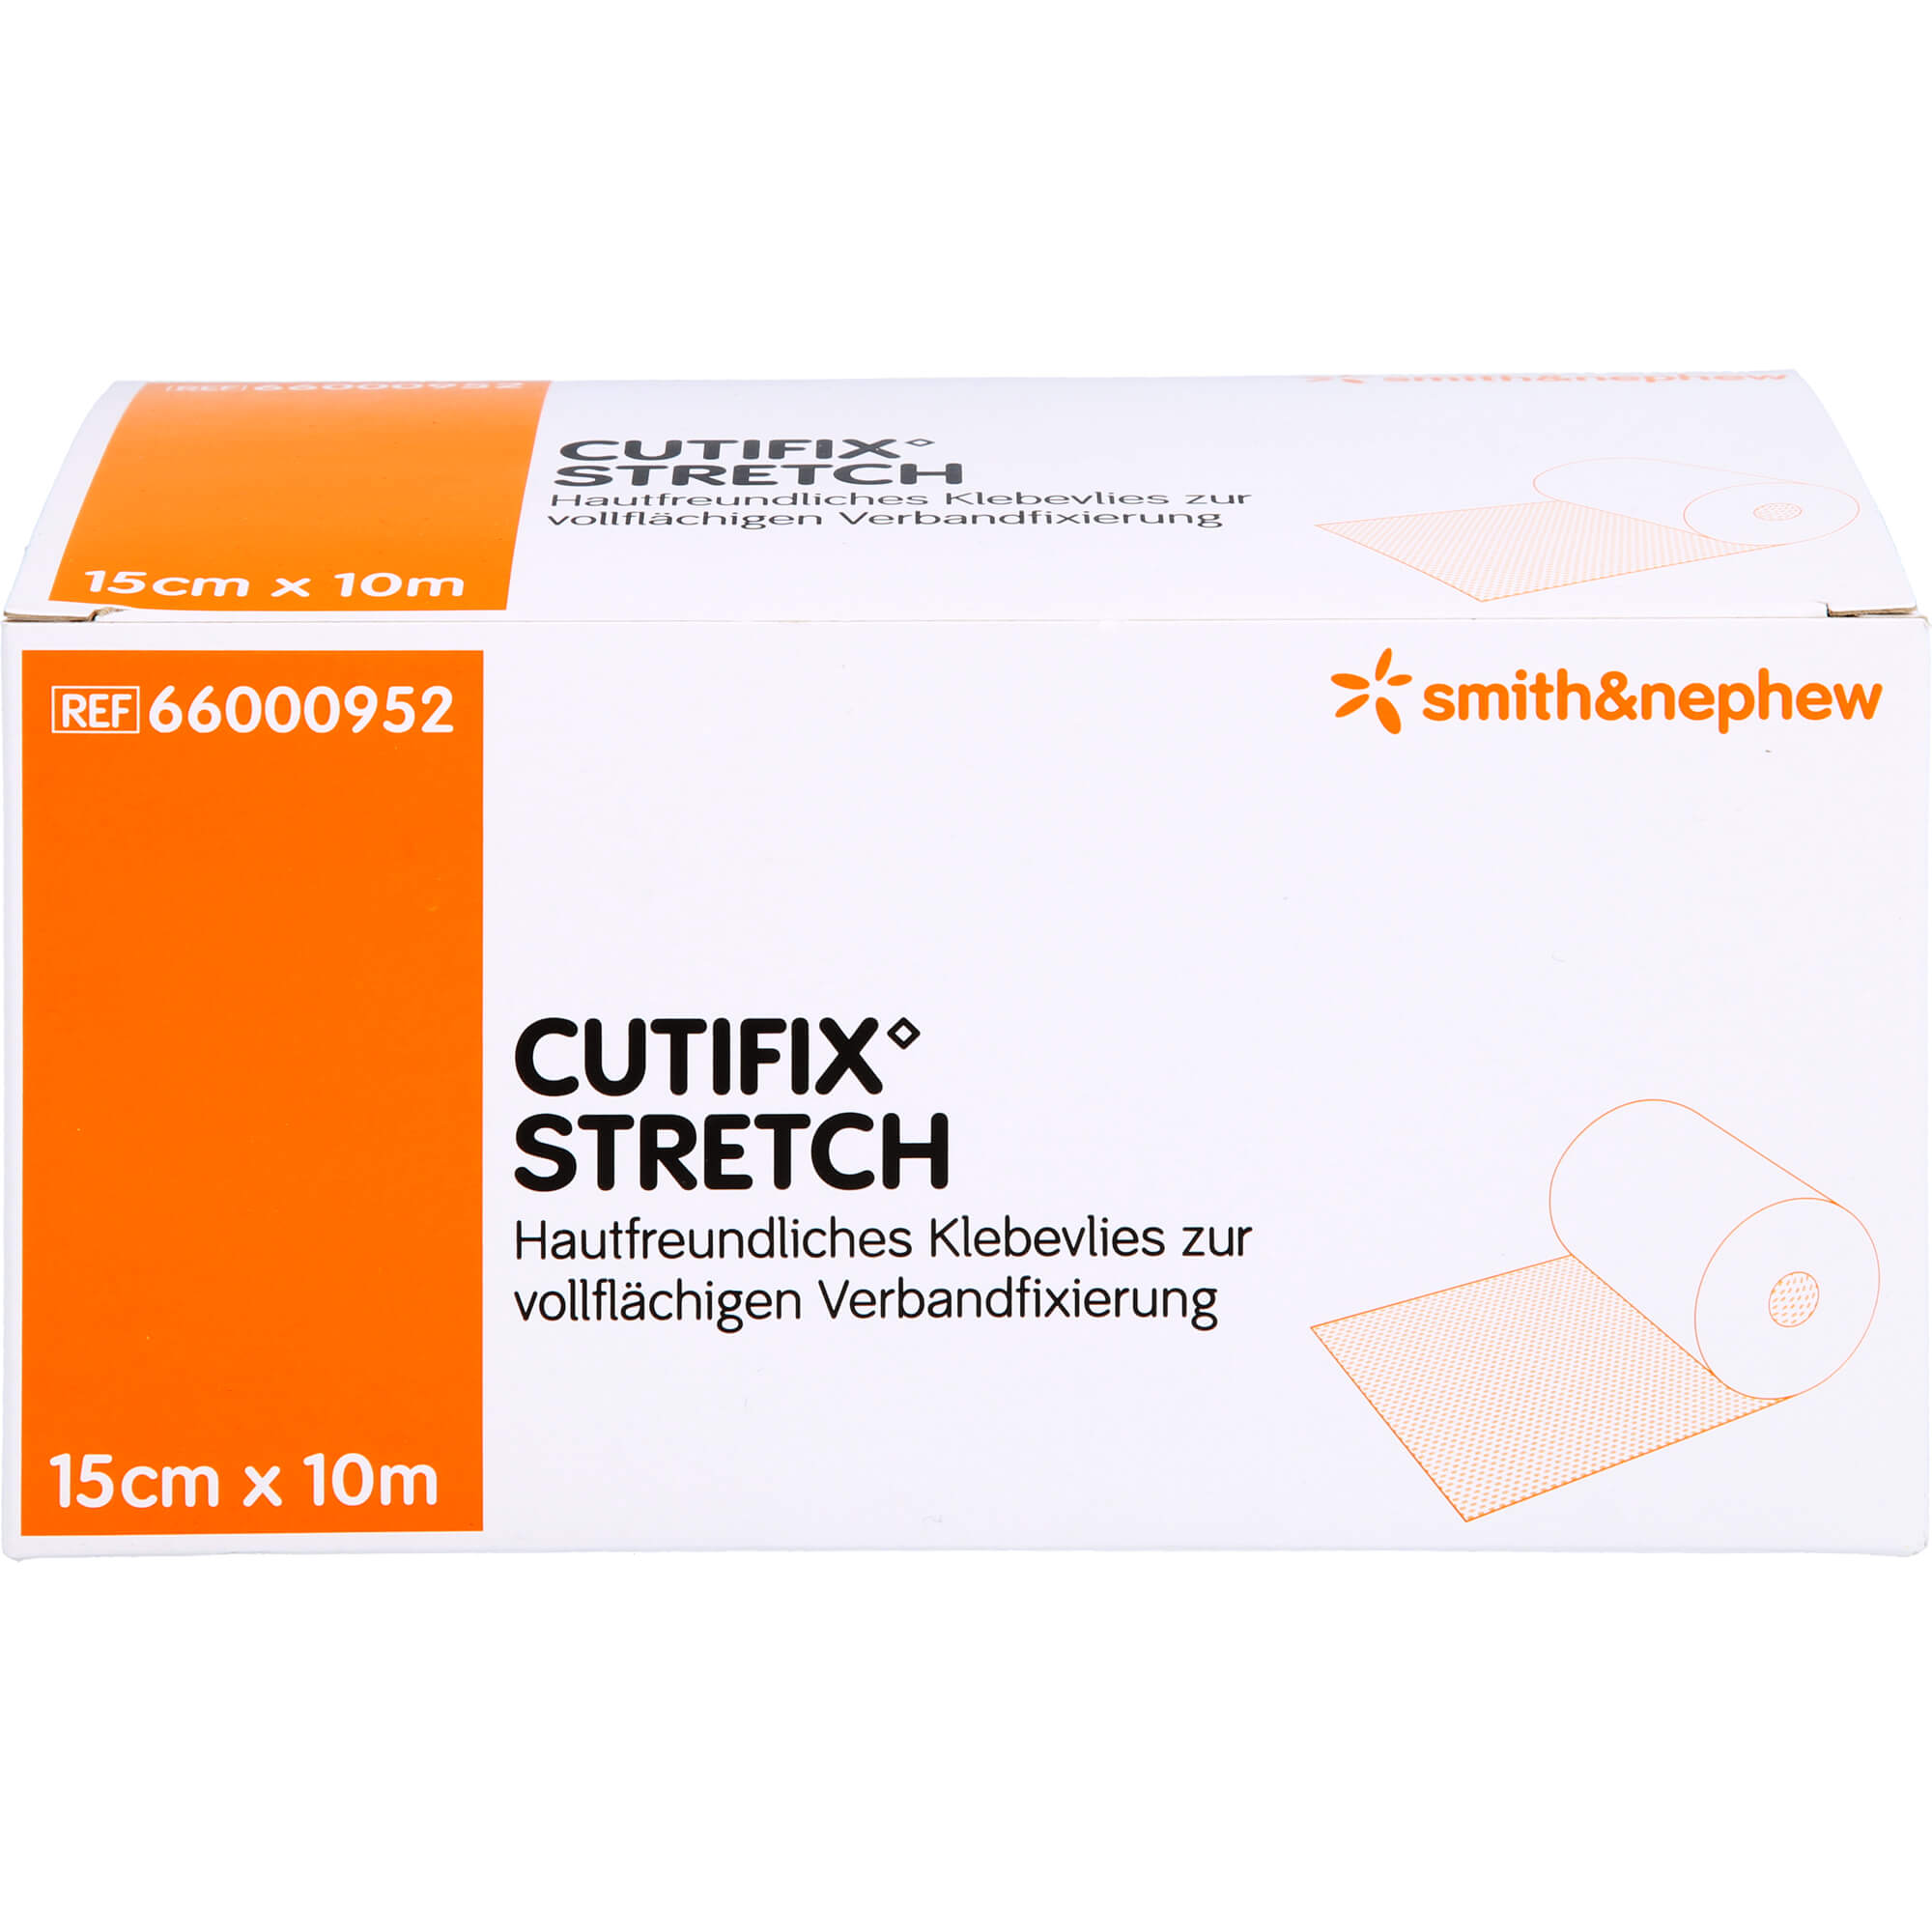 CUTIFIX Stretch Verband 15 cmx10 m